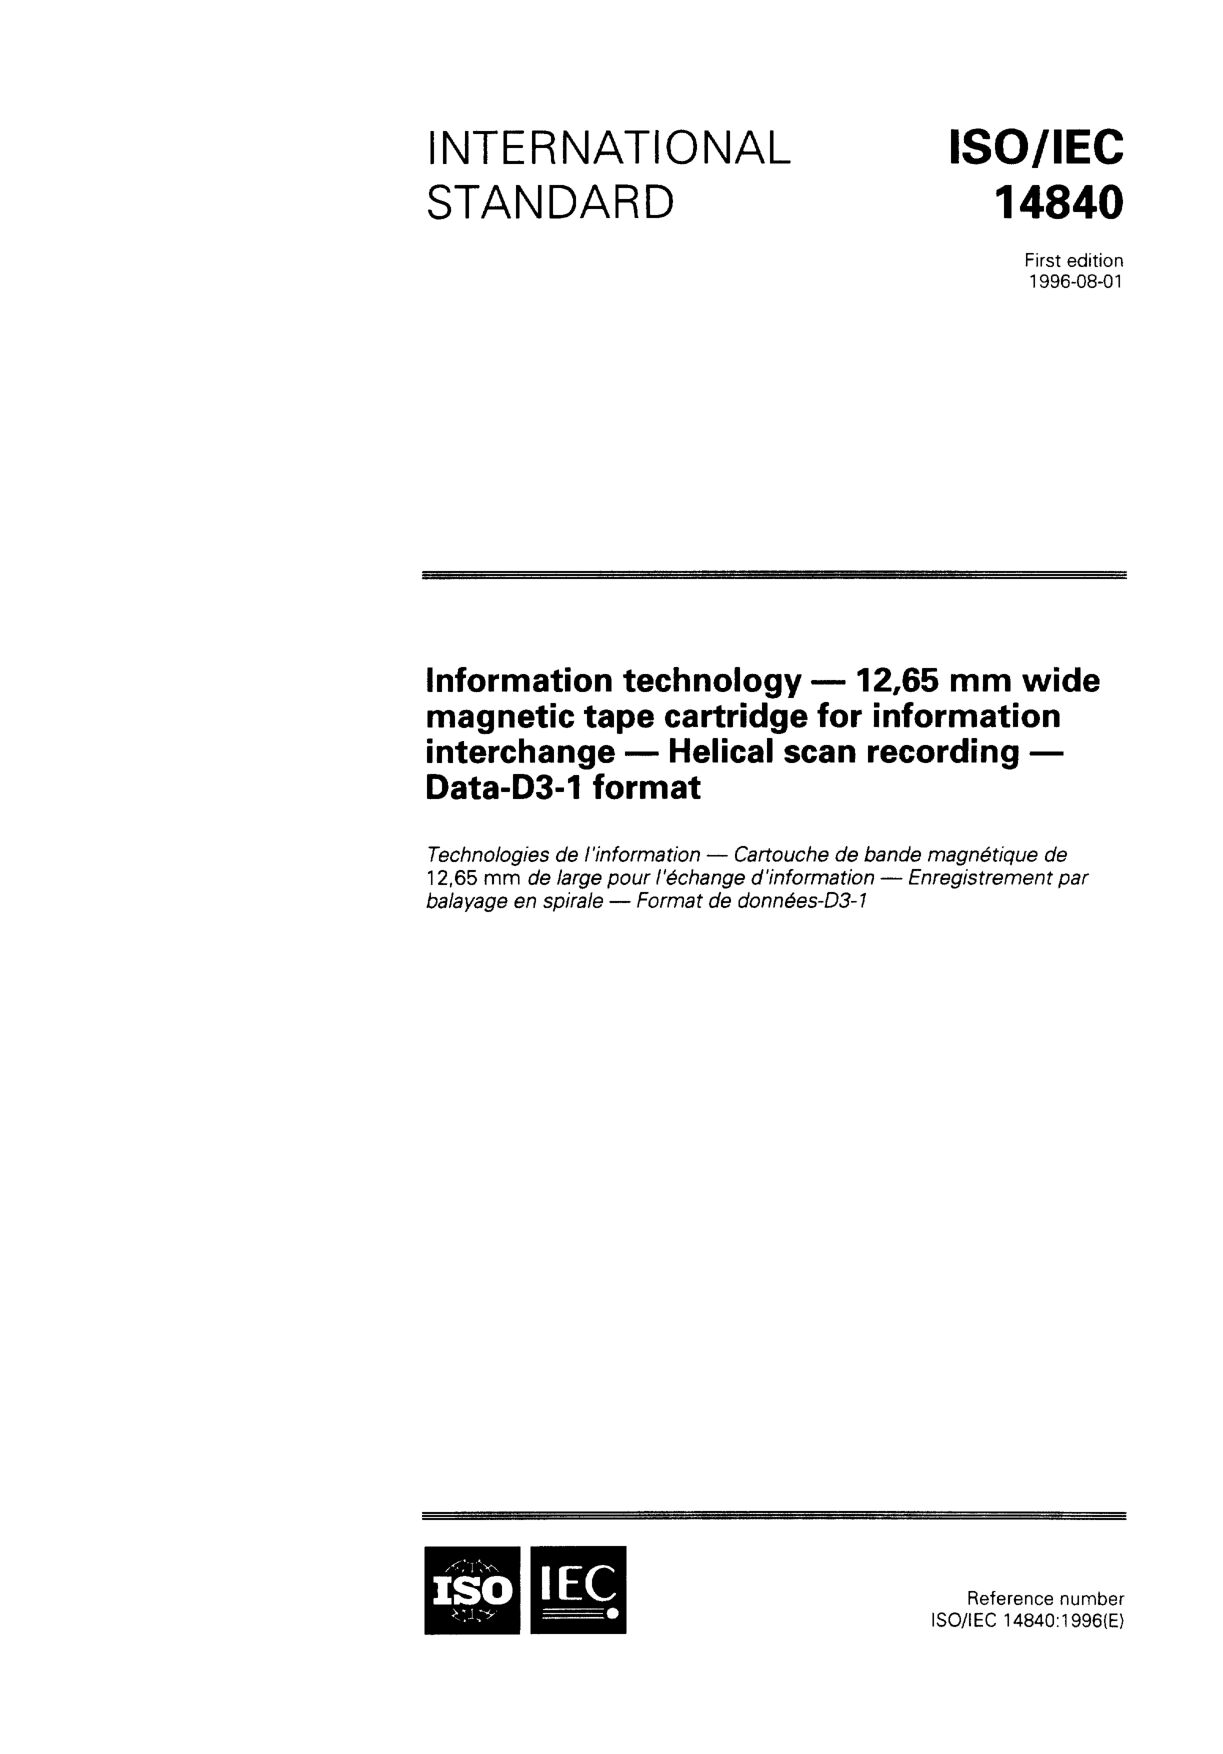 ISO/IEC 14840:1996封面图